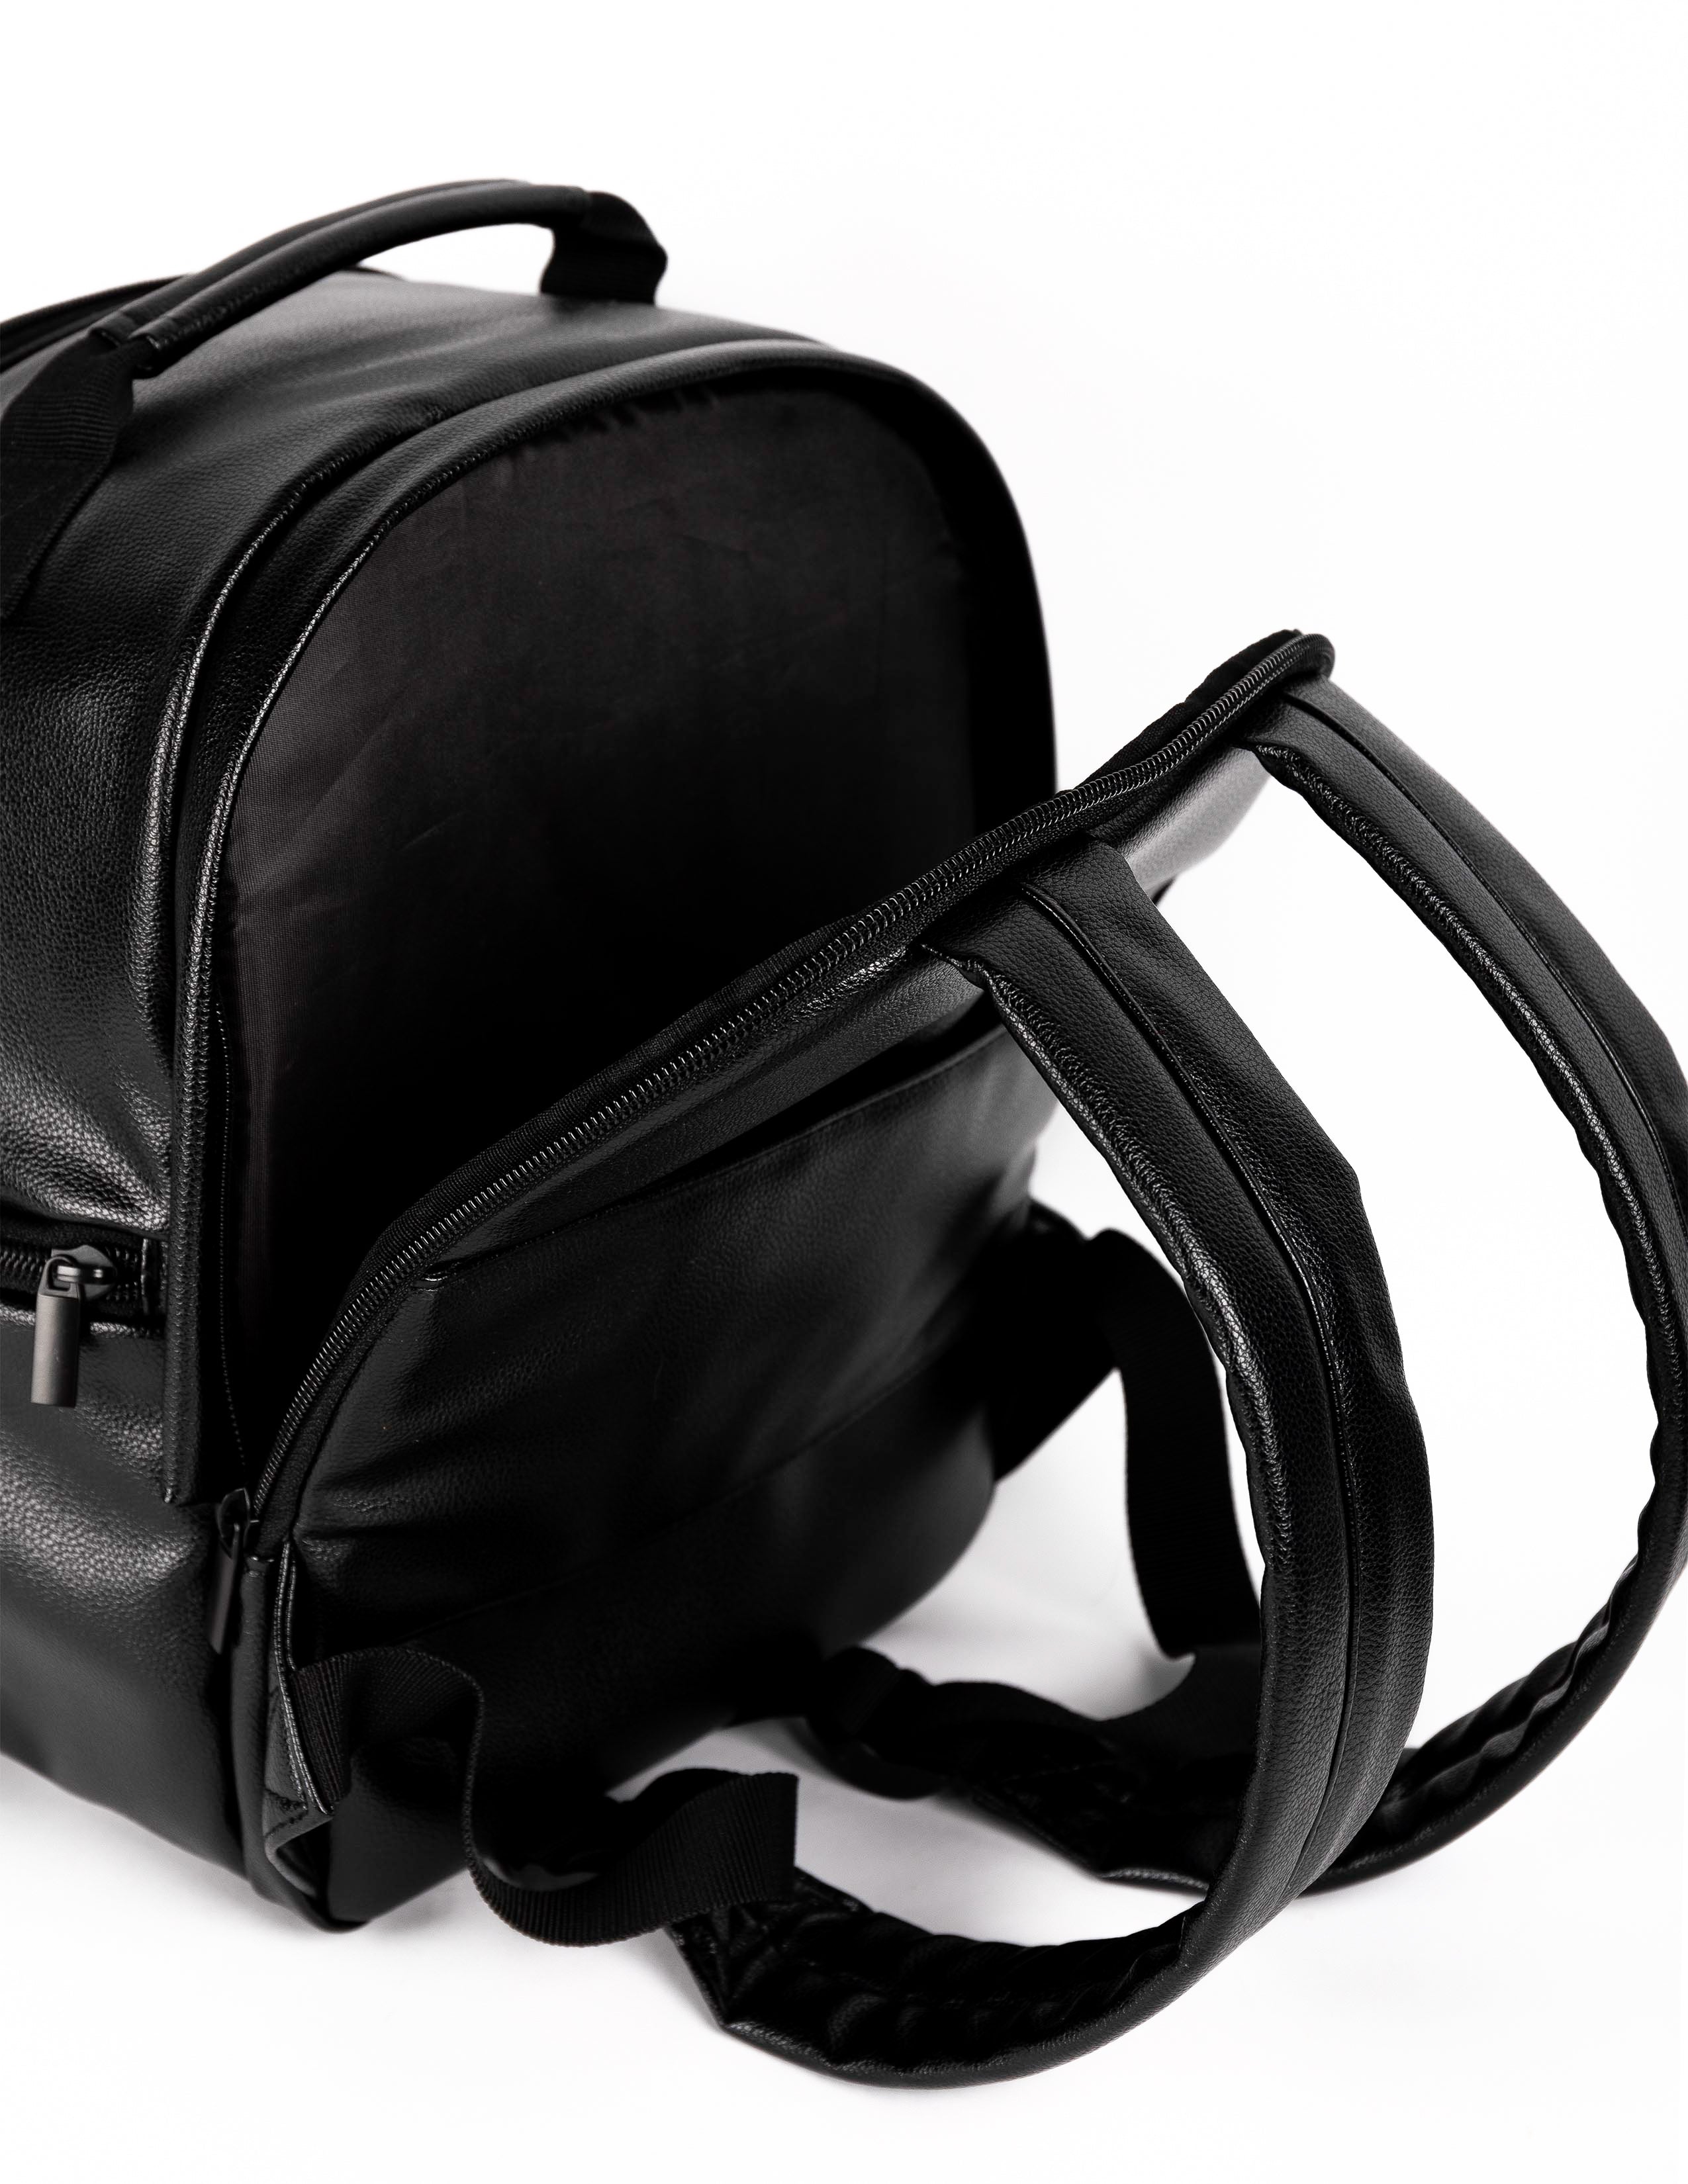 bodhi camera backpack